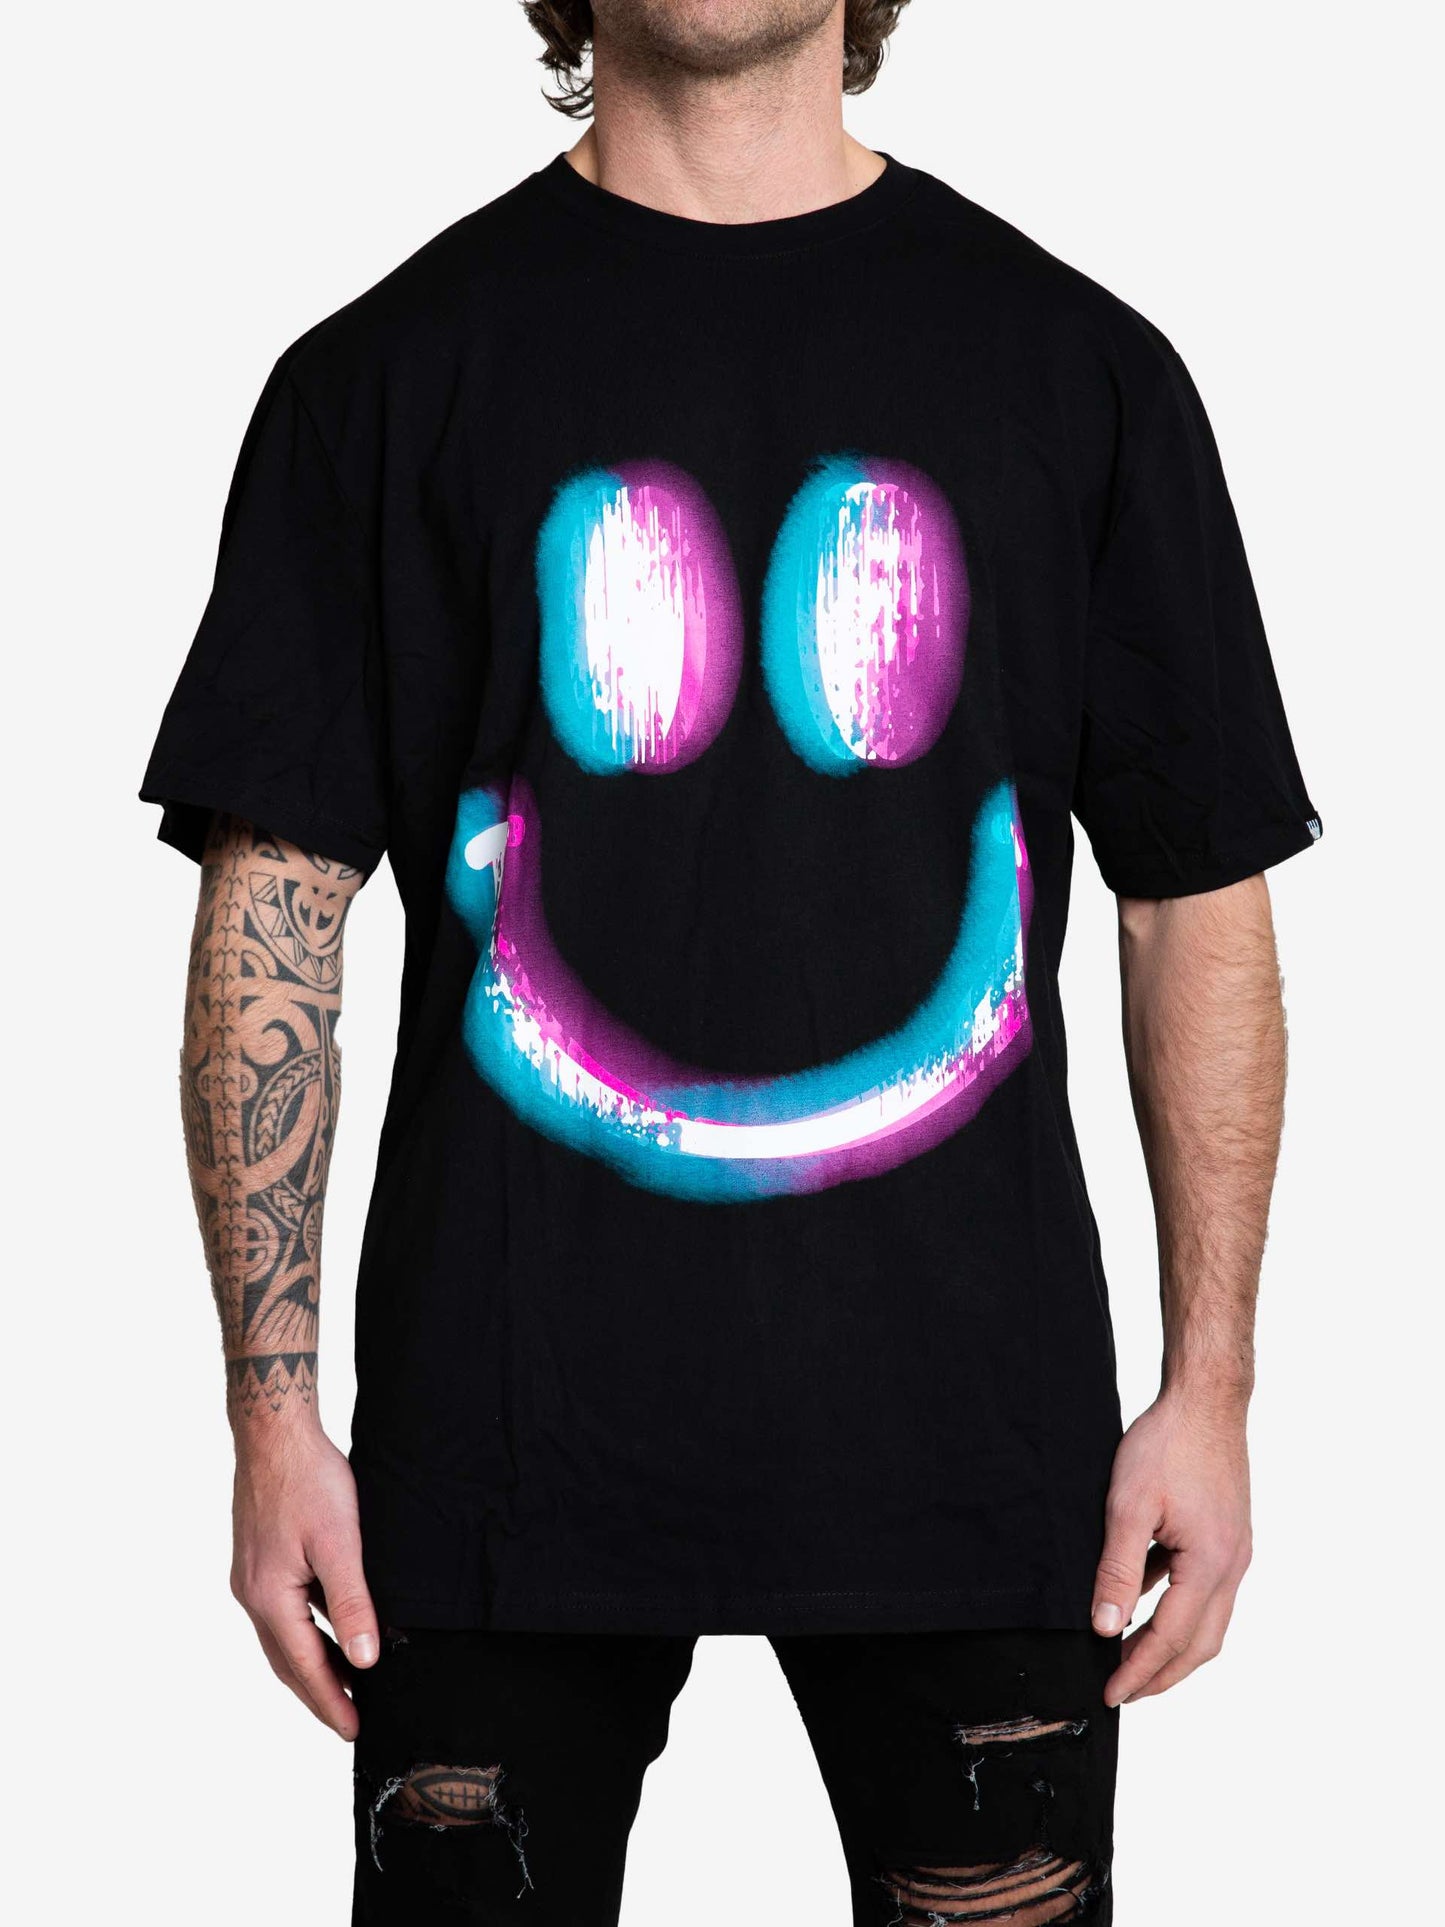 Rave Culture Glow Smiley T-Shirt Front - Rave Culture Shop